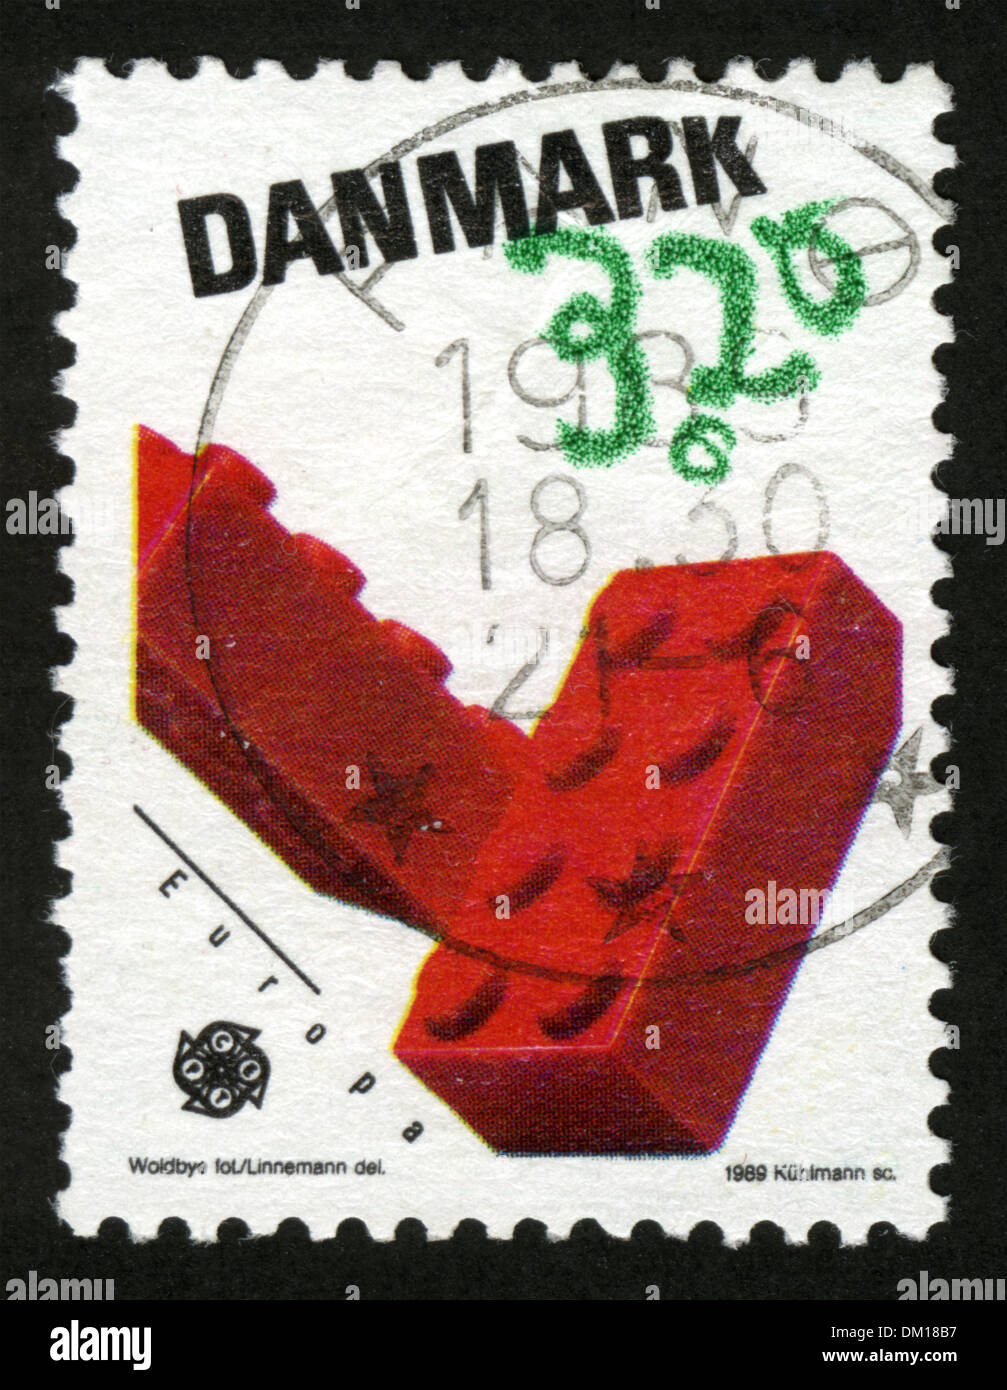 Kuvahaun tulos haulle Denmark stamp